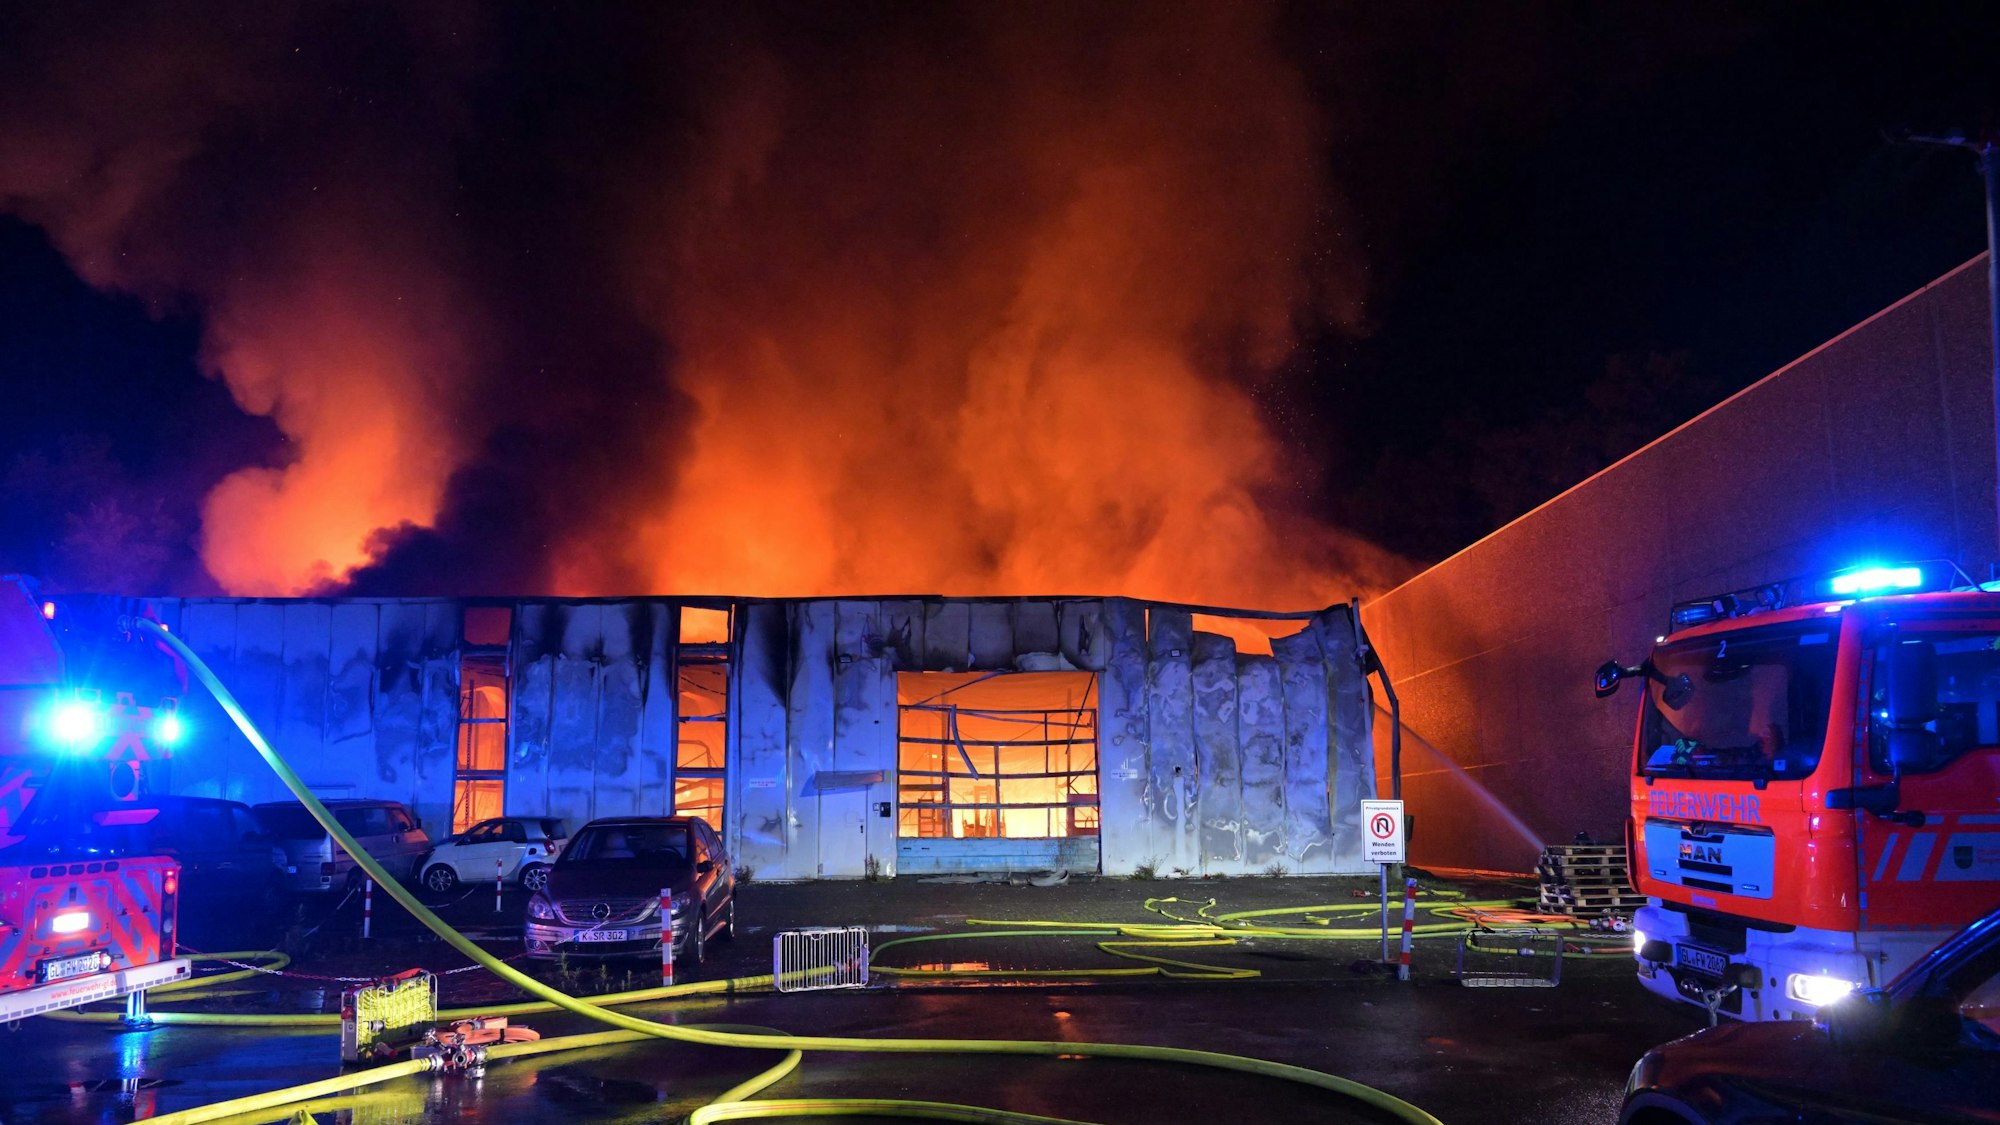 Feuerschein ist in einer Lagerhalle zu sehen, die durch einen Brand bereits stark beschädigt ist.